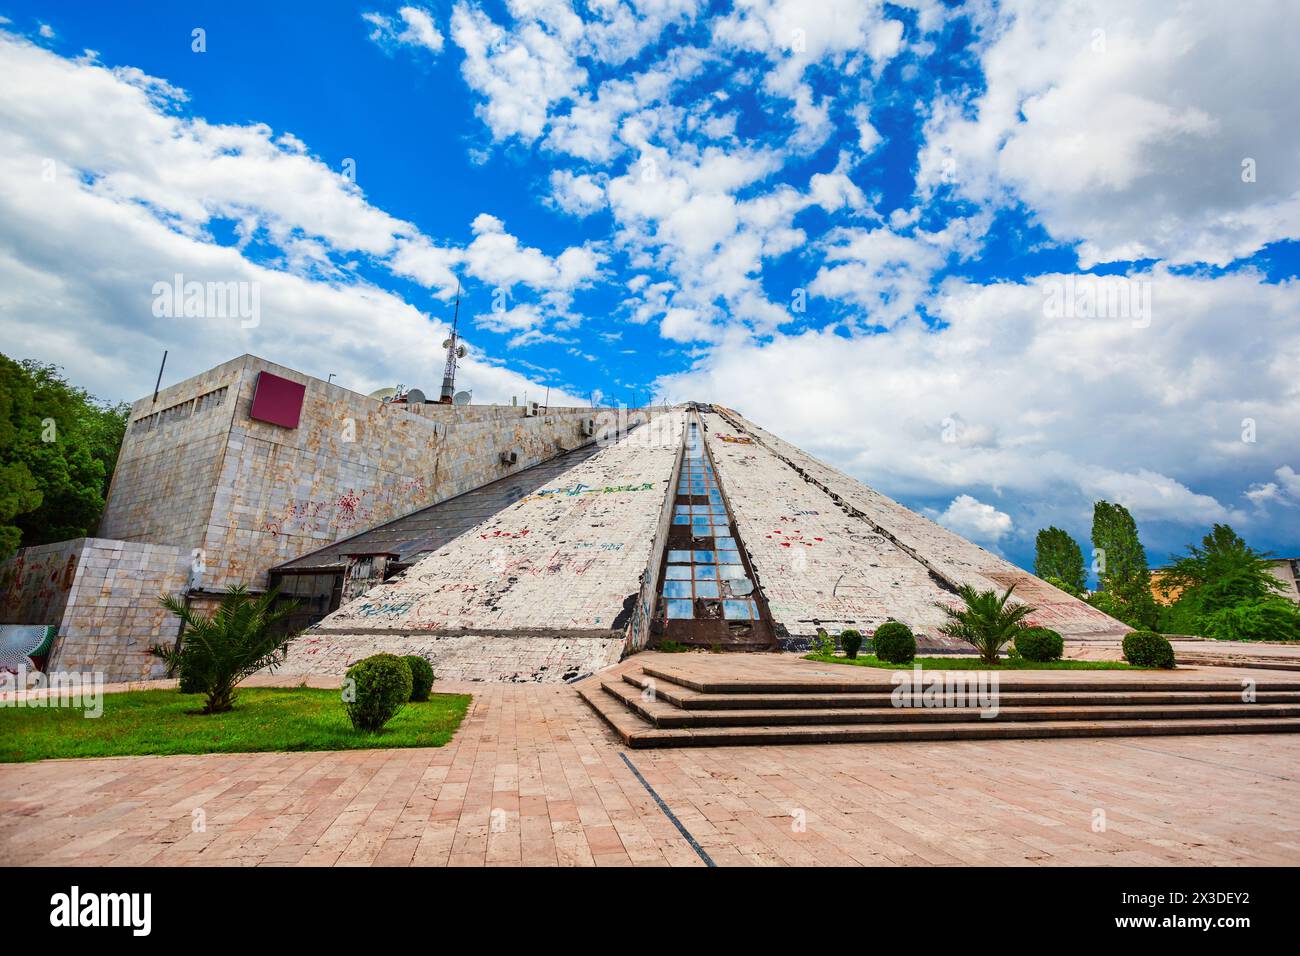 La piramide di Tirana o Museo Enver Hoxha si trova nel centro della città di Tirana, la capitale dell'Albania Foto Stock